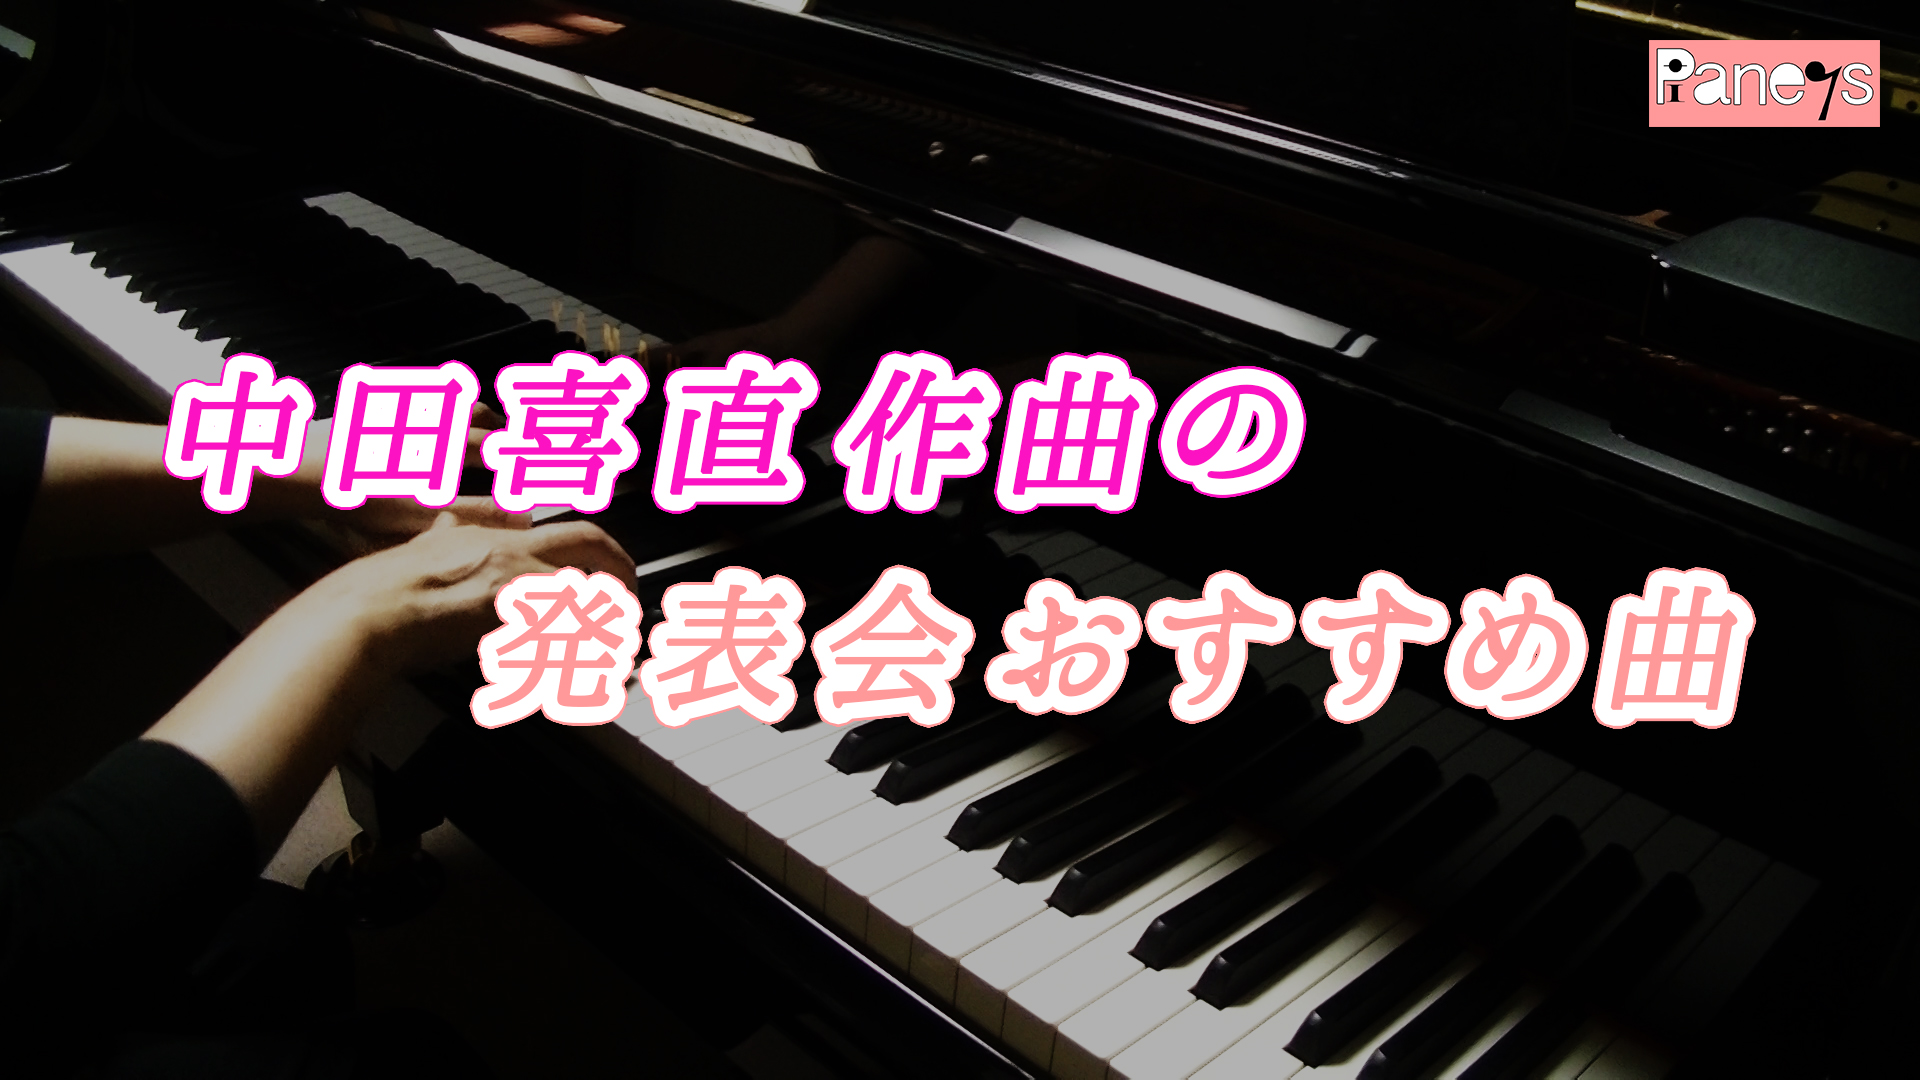 中田喜直作曲の発表会おすすめ曲 動画で選べる ピアノ発表会おすすめ曲